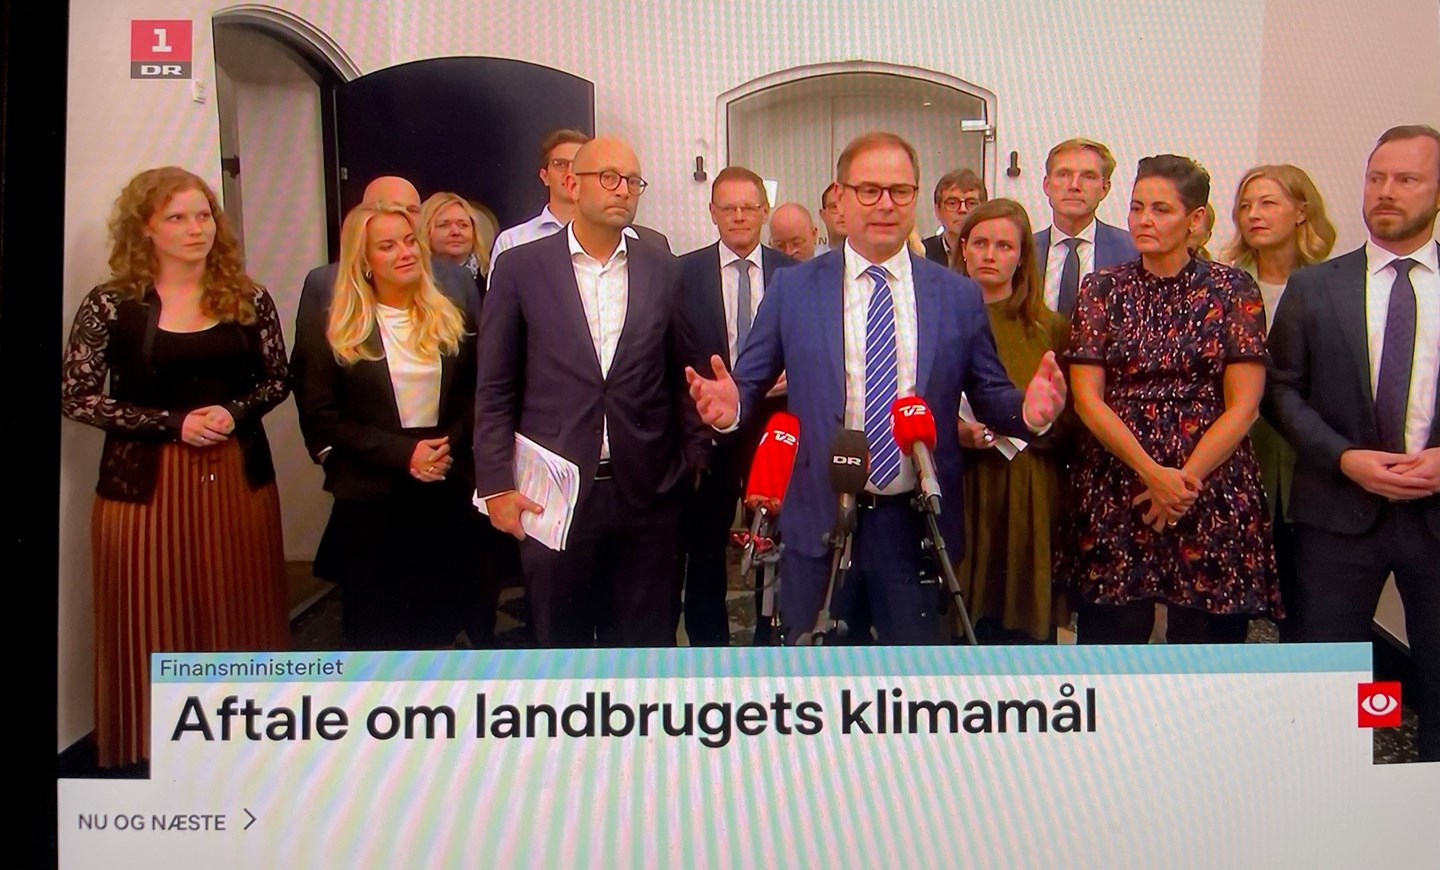 Finansminister Nicolai Wammen præsenterer den brede politiske klimaaftale for landbruget